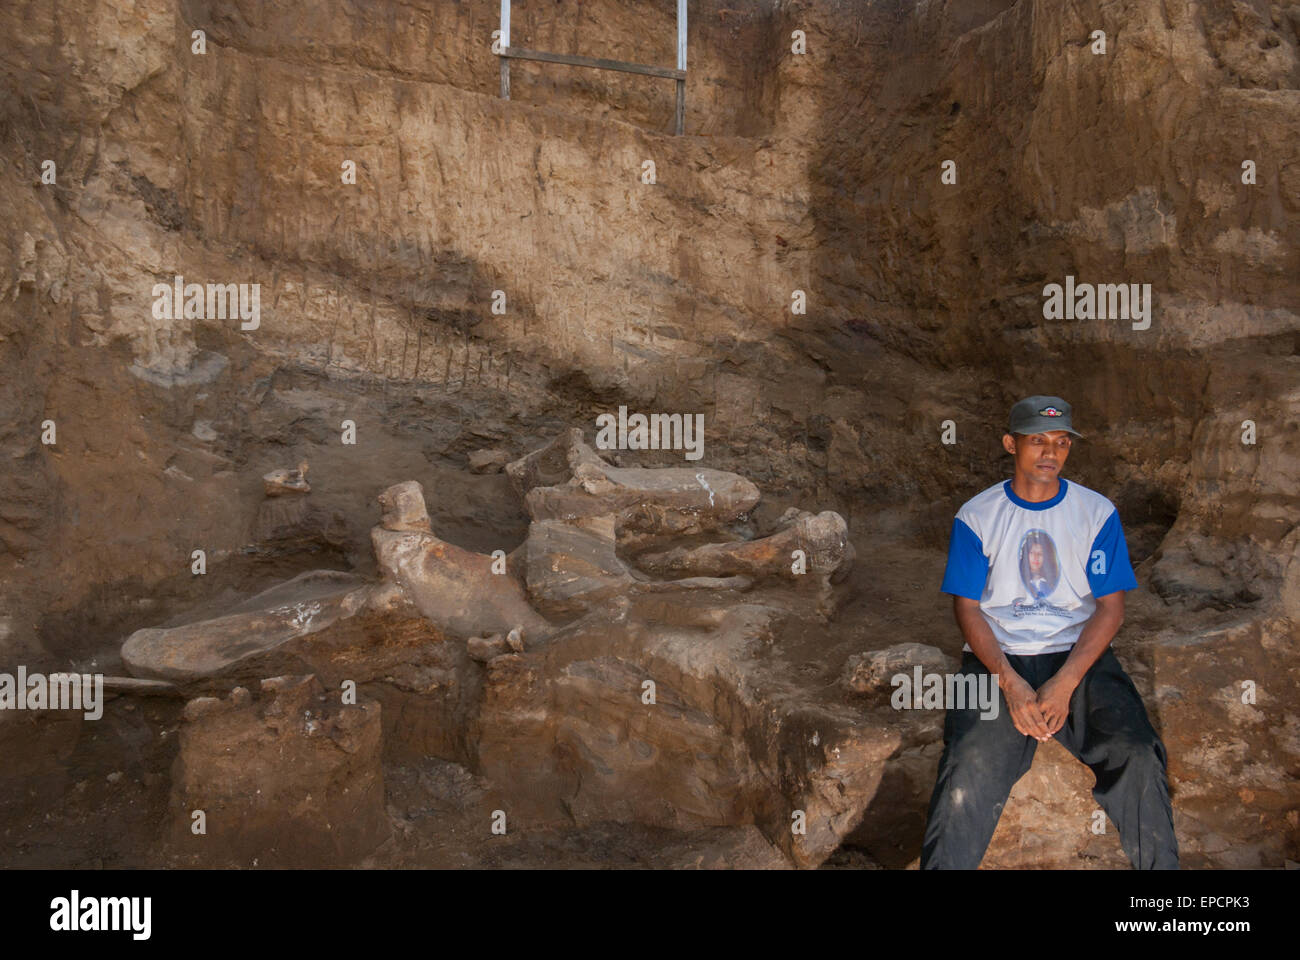 Un abitante del villaggio è fotografato presso il sito di scavo di ossa fossili di una specie di elefante estinta, Elephas hysudrindicus, a Blora, Indonesia. Foto Stock